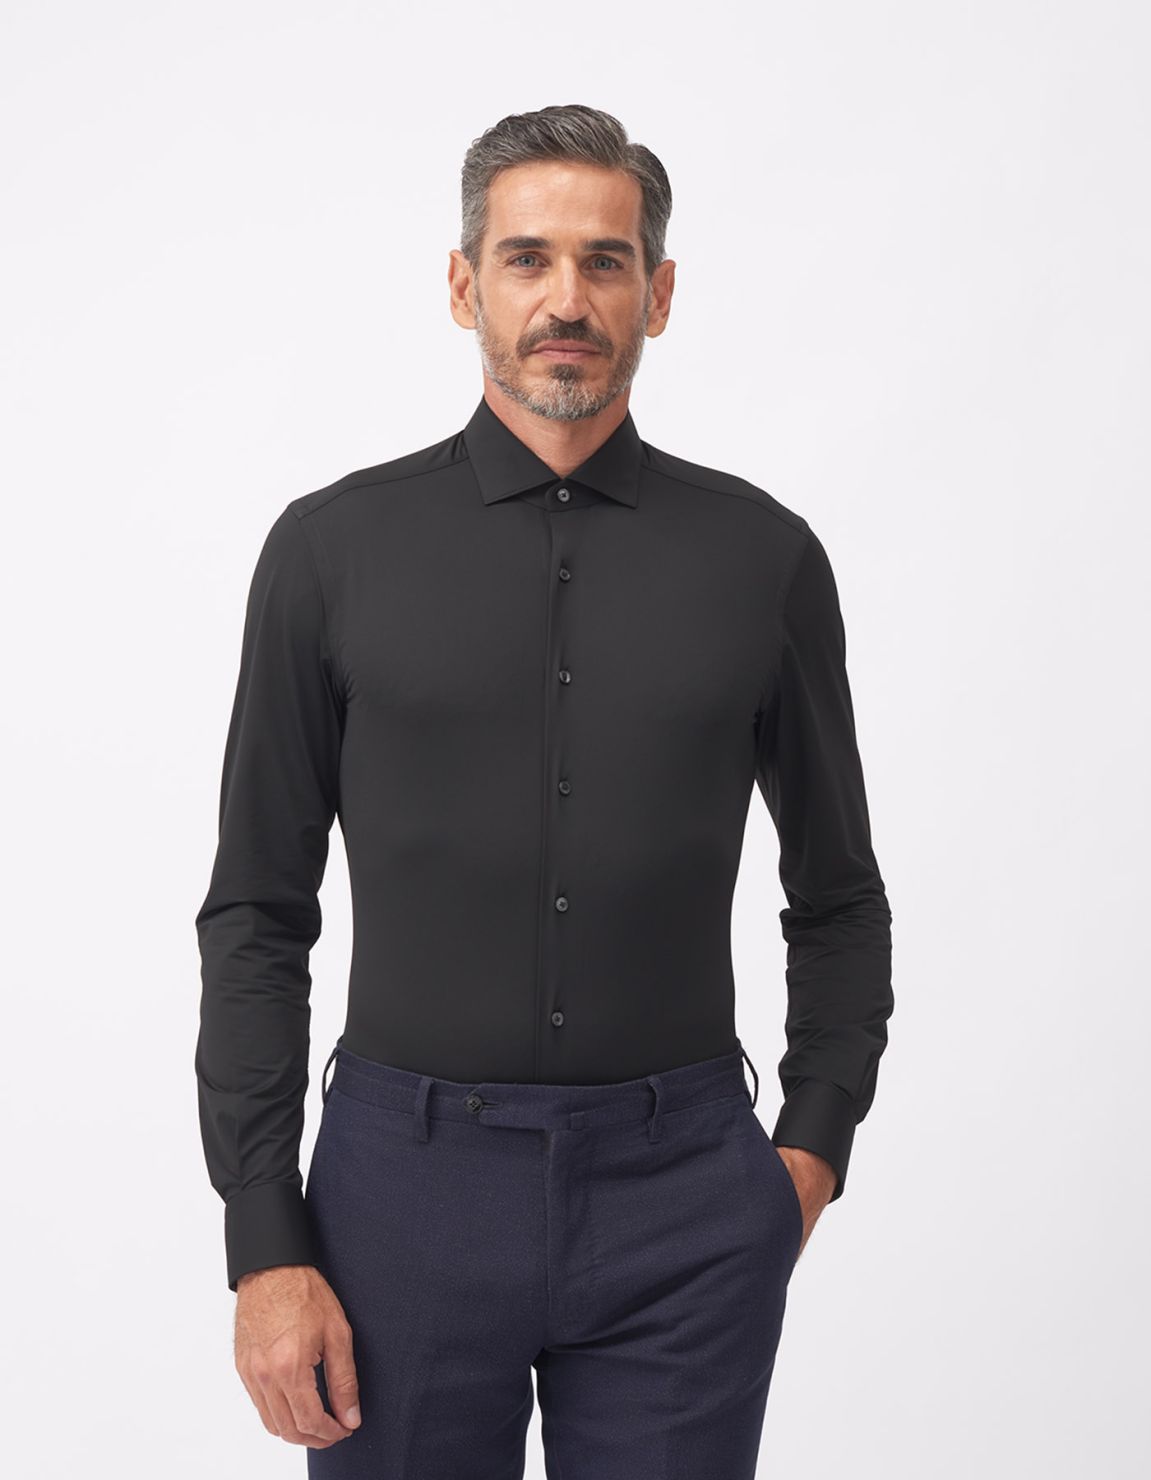 Shirt Collar small cutaway Black Twill Slim Fit 6